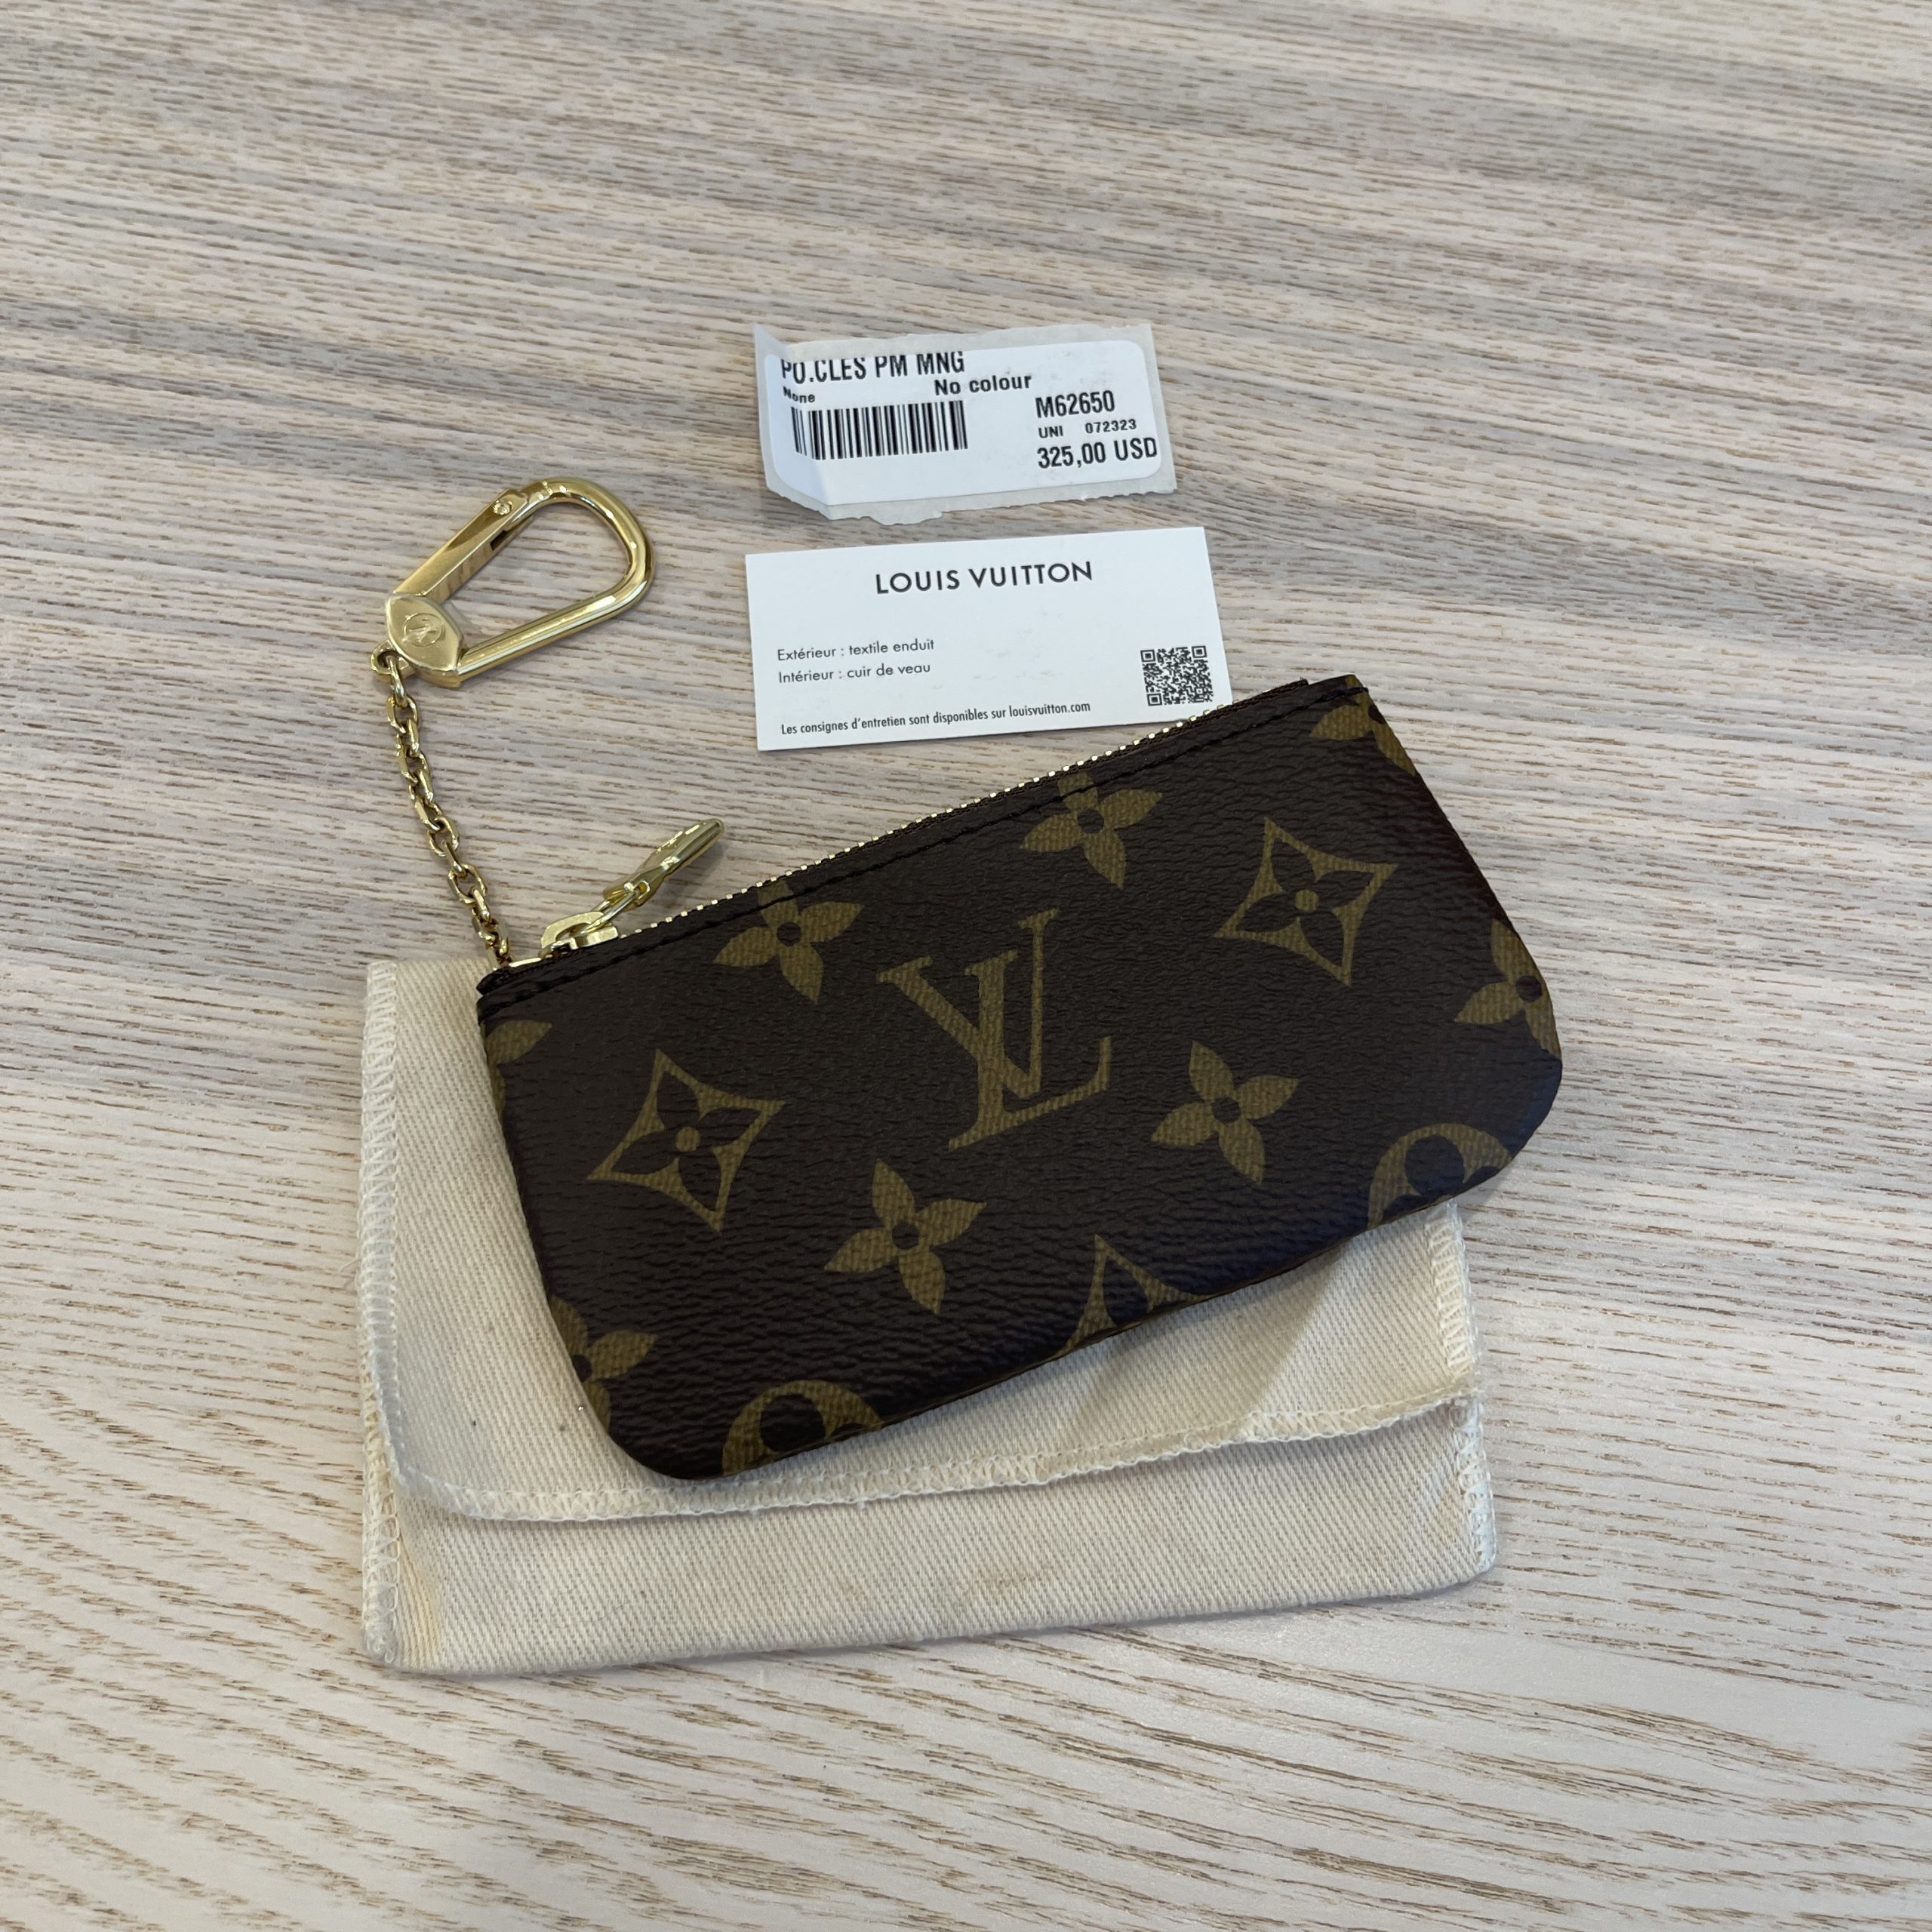 m62650 key pouch